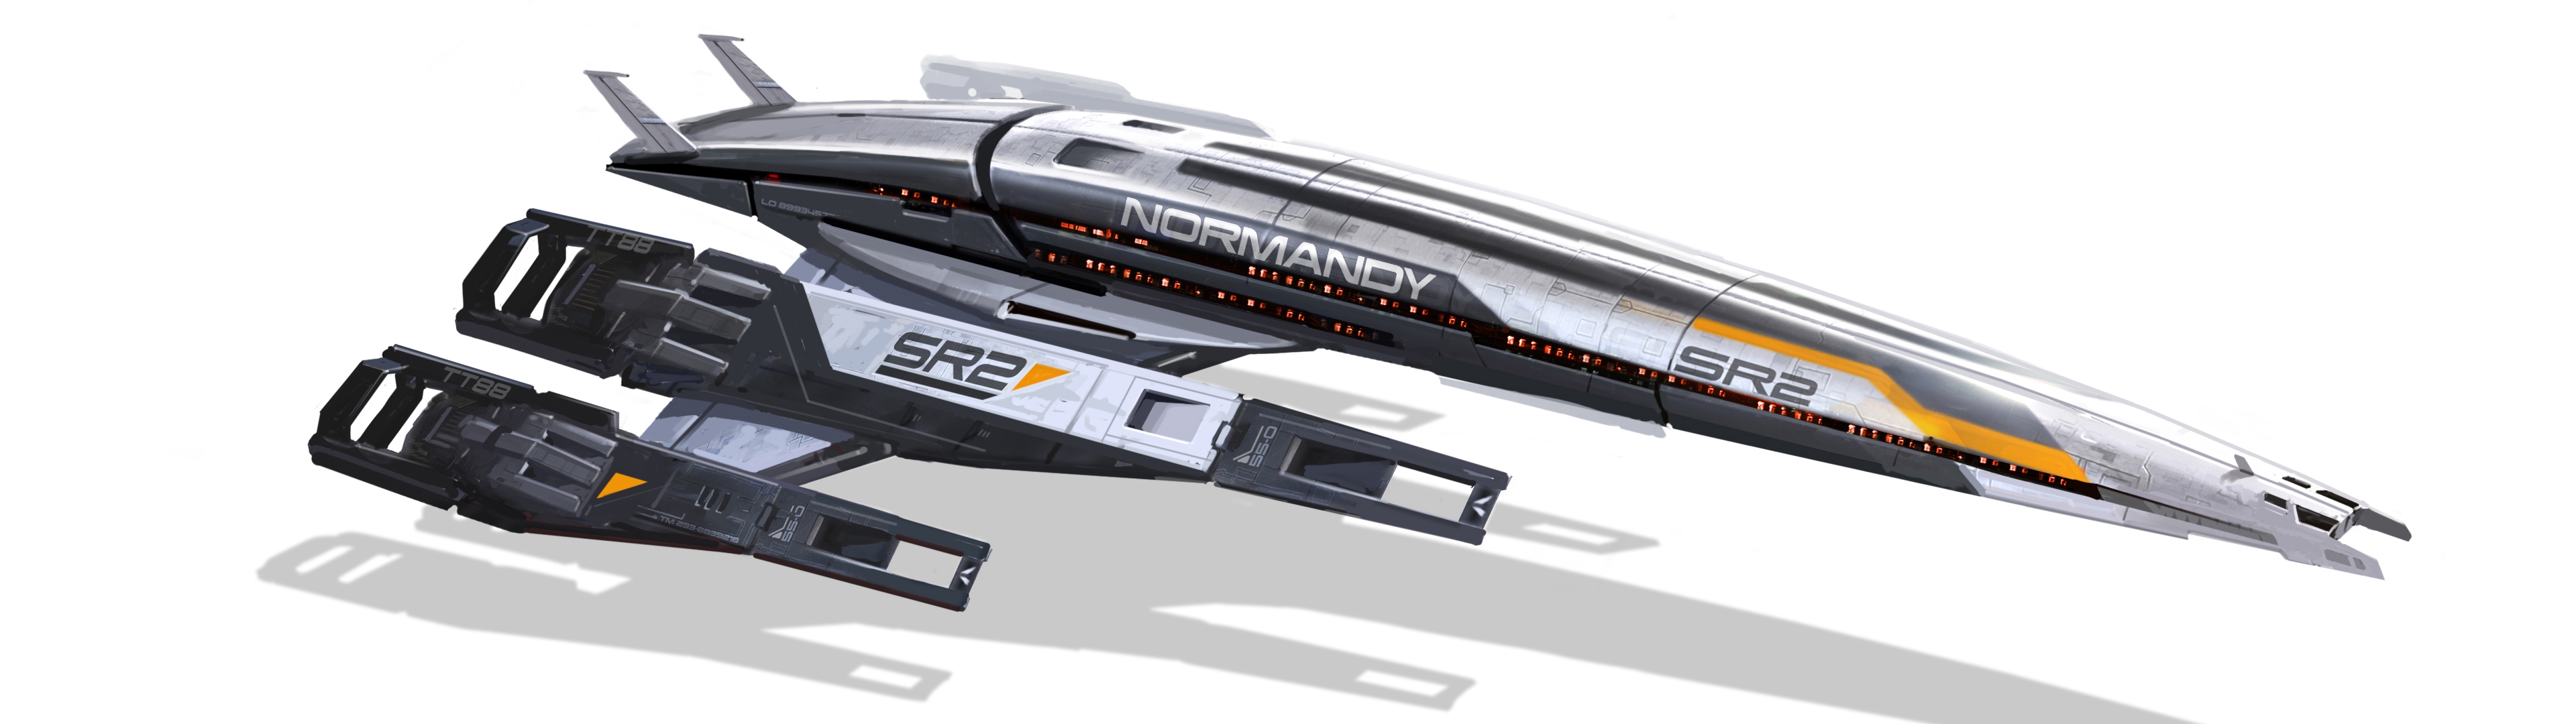 Wallpaper Mass Effect 3, Normandy, Ship, Model - Mass Effect Normandy Png - HD Wallpaper 